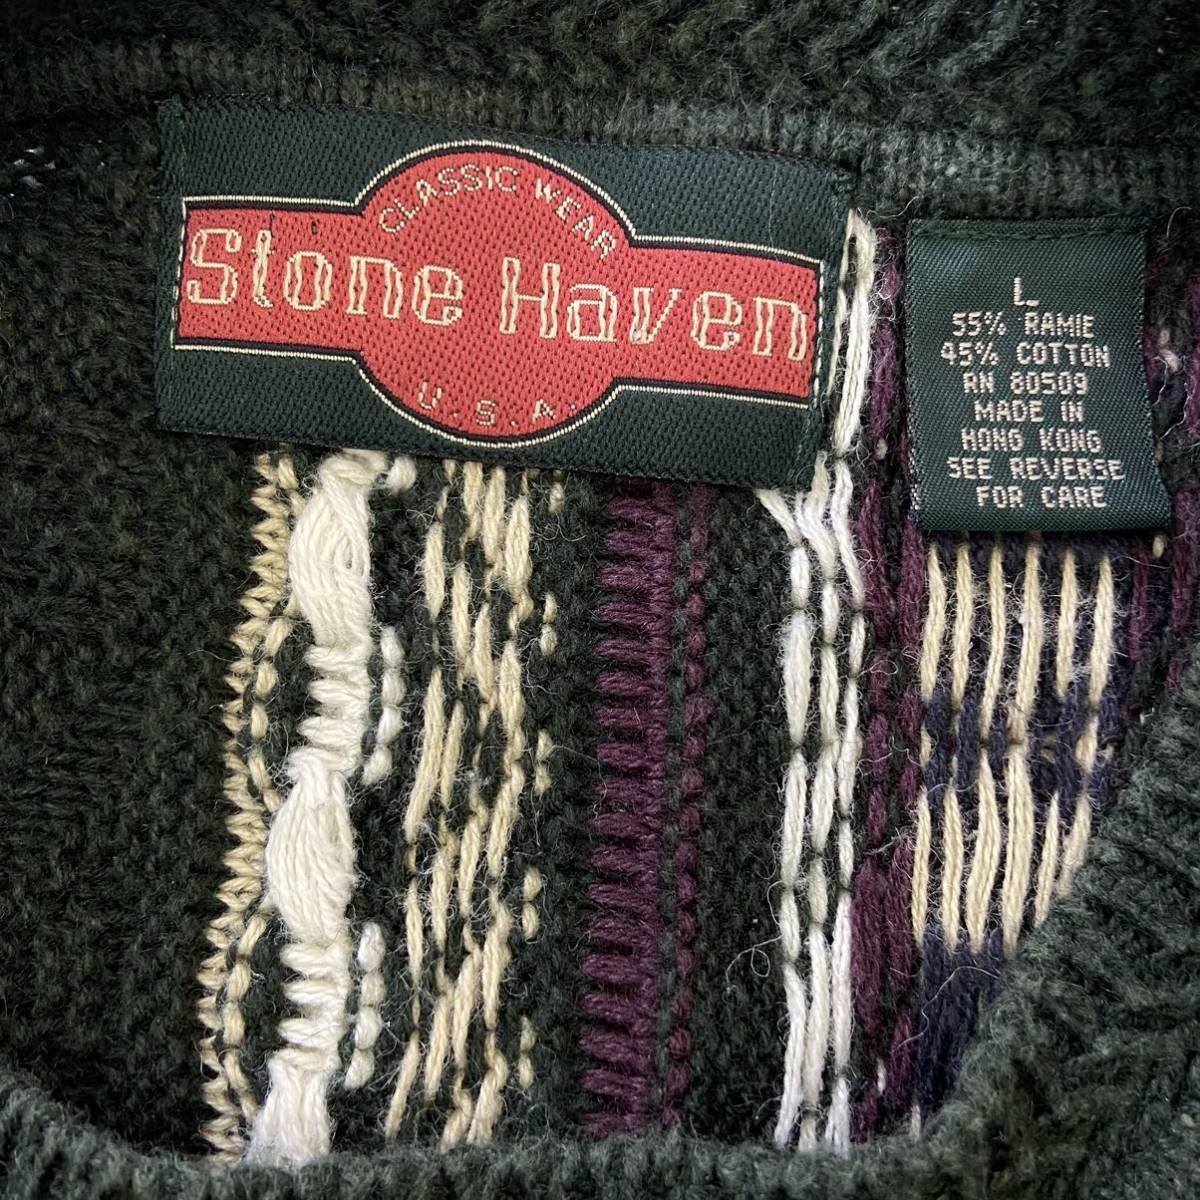 90s Stone Haven 3D 立体編み セーター L グリーン 総柄 クージー風 コットン ラミー ニット ストーンヘブン ストライプ マルチカラー_画像4